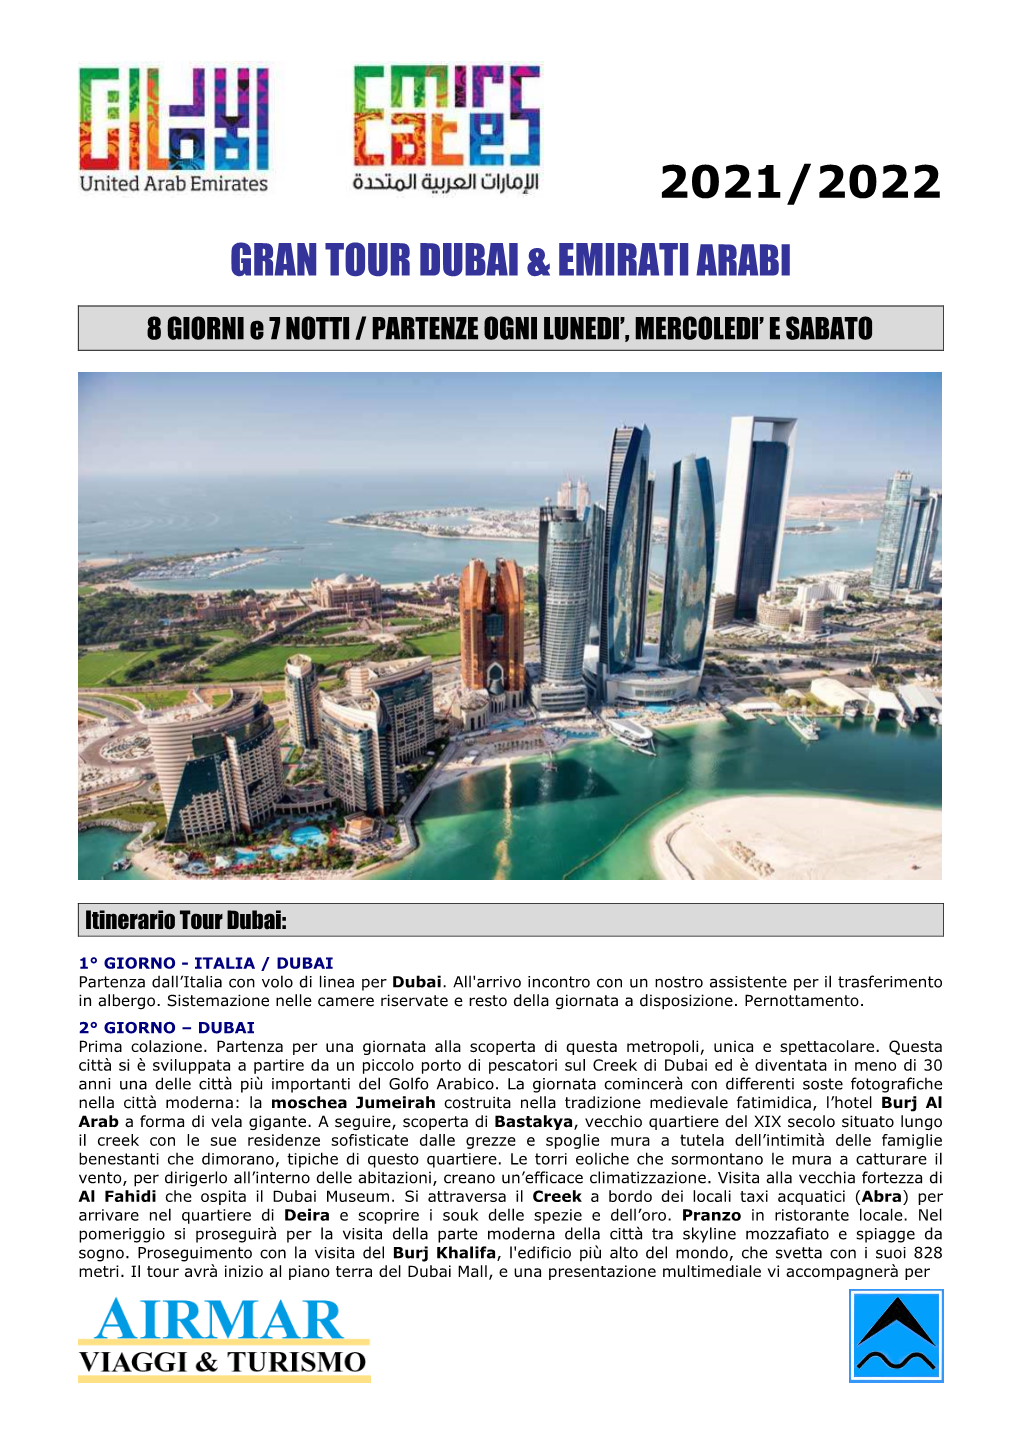 Gran Tour Dubai & Emiratiarabi